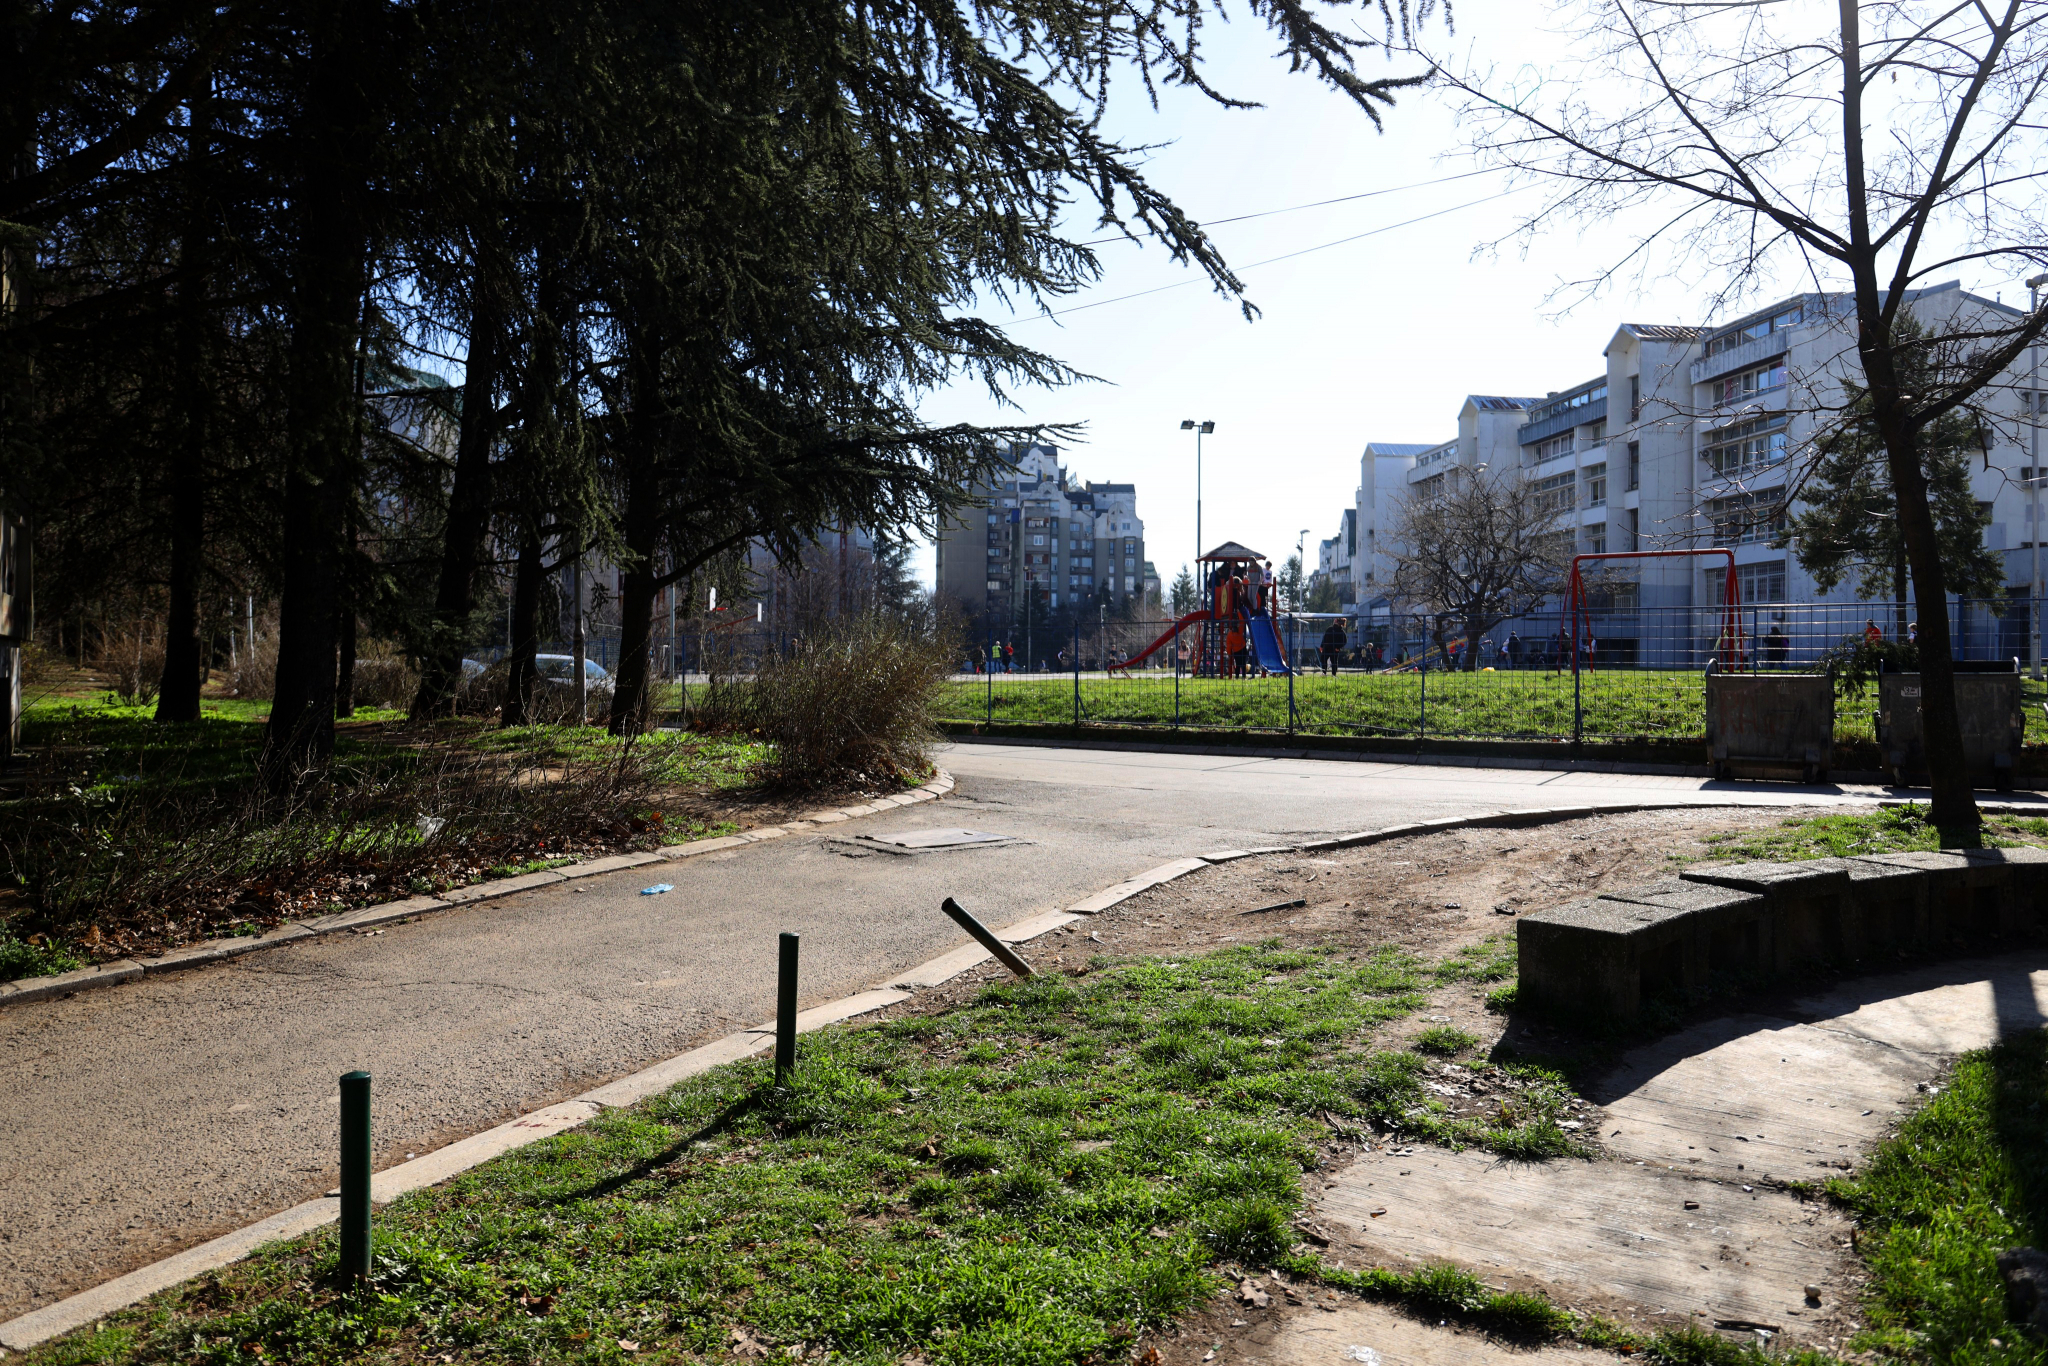 ALEKSANDRA UBILI VELJINI GROBARI?! Policija još traga za huliganima koji su nožem izboli mladića na Petlovom brdu u Beogradu